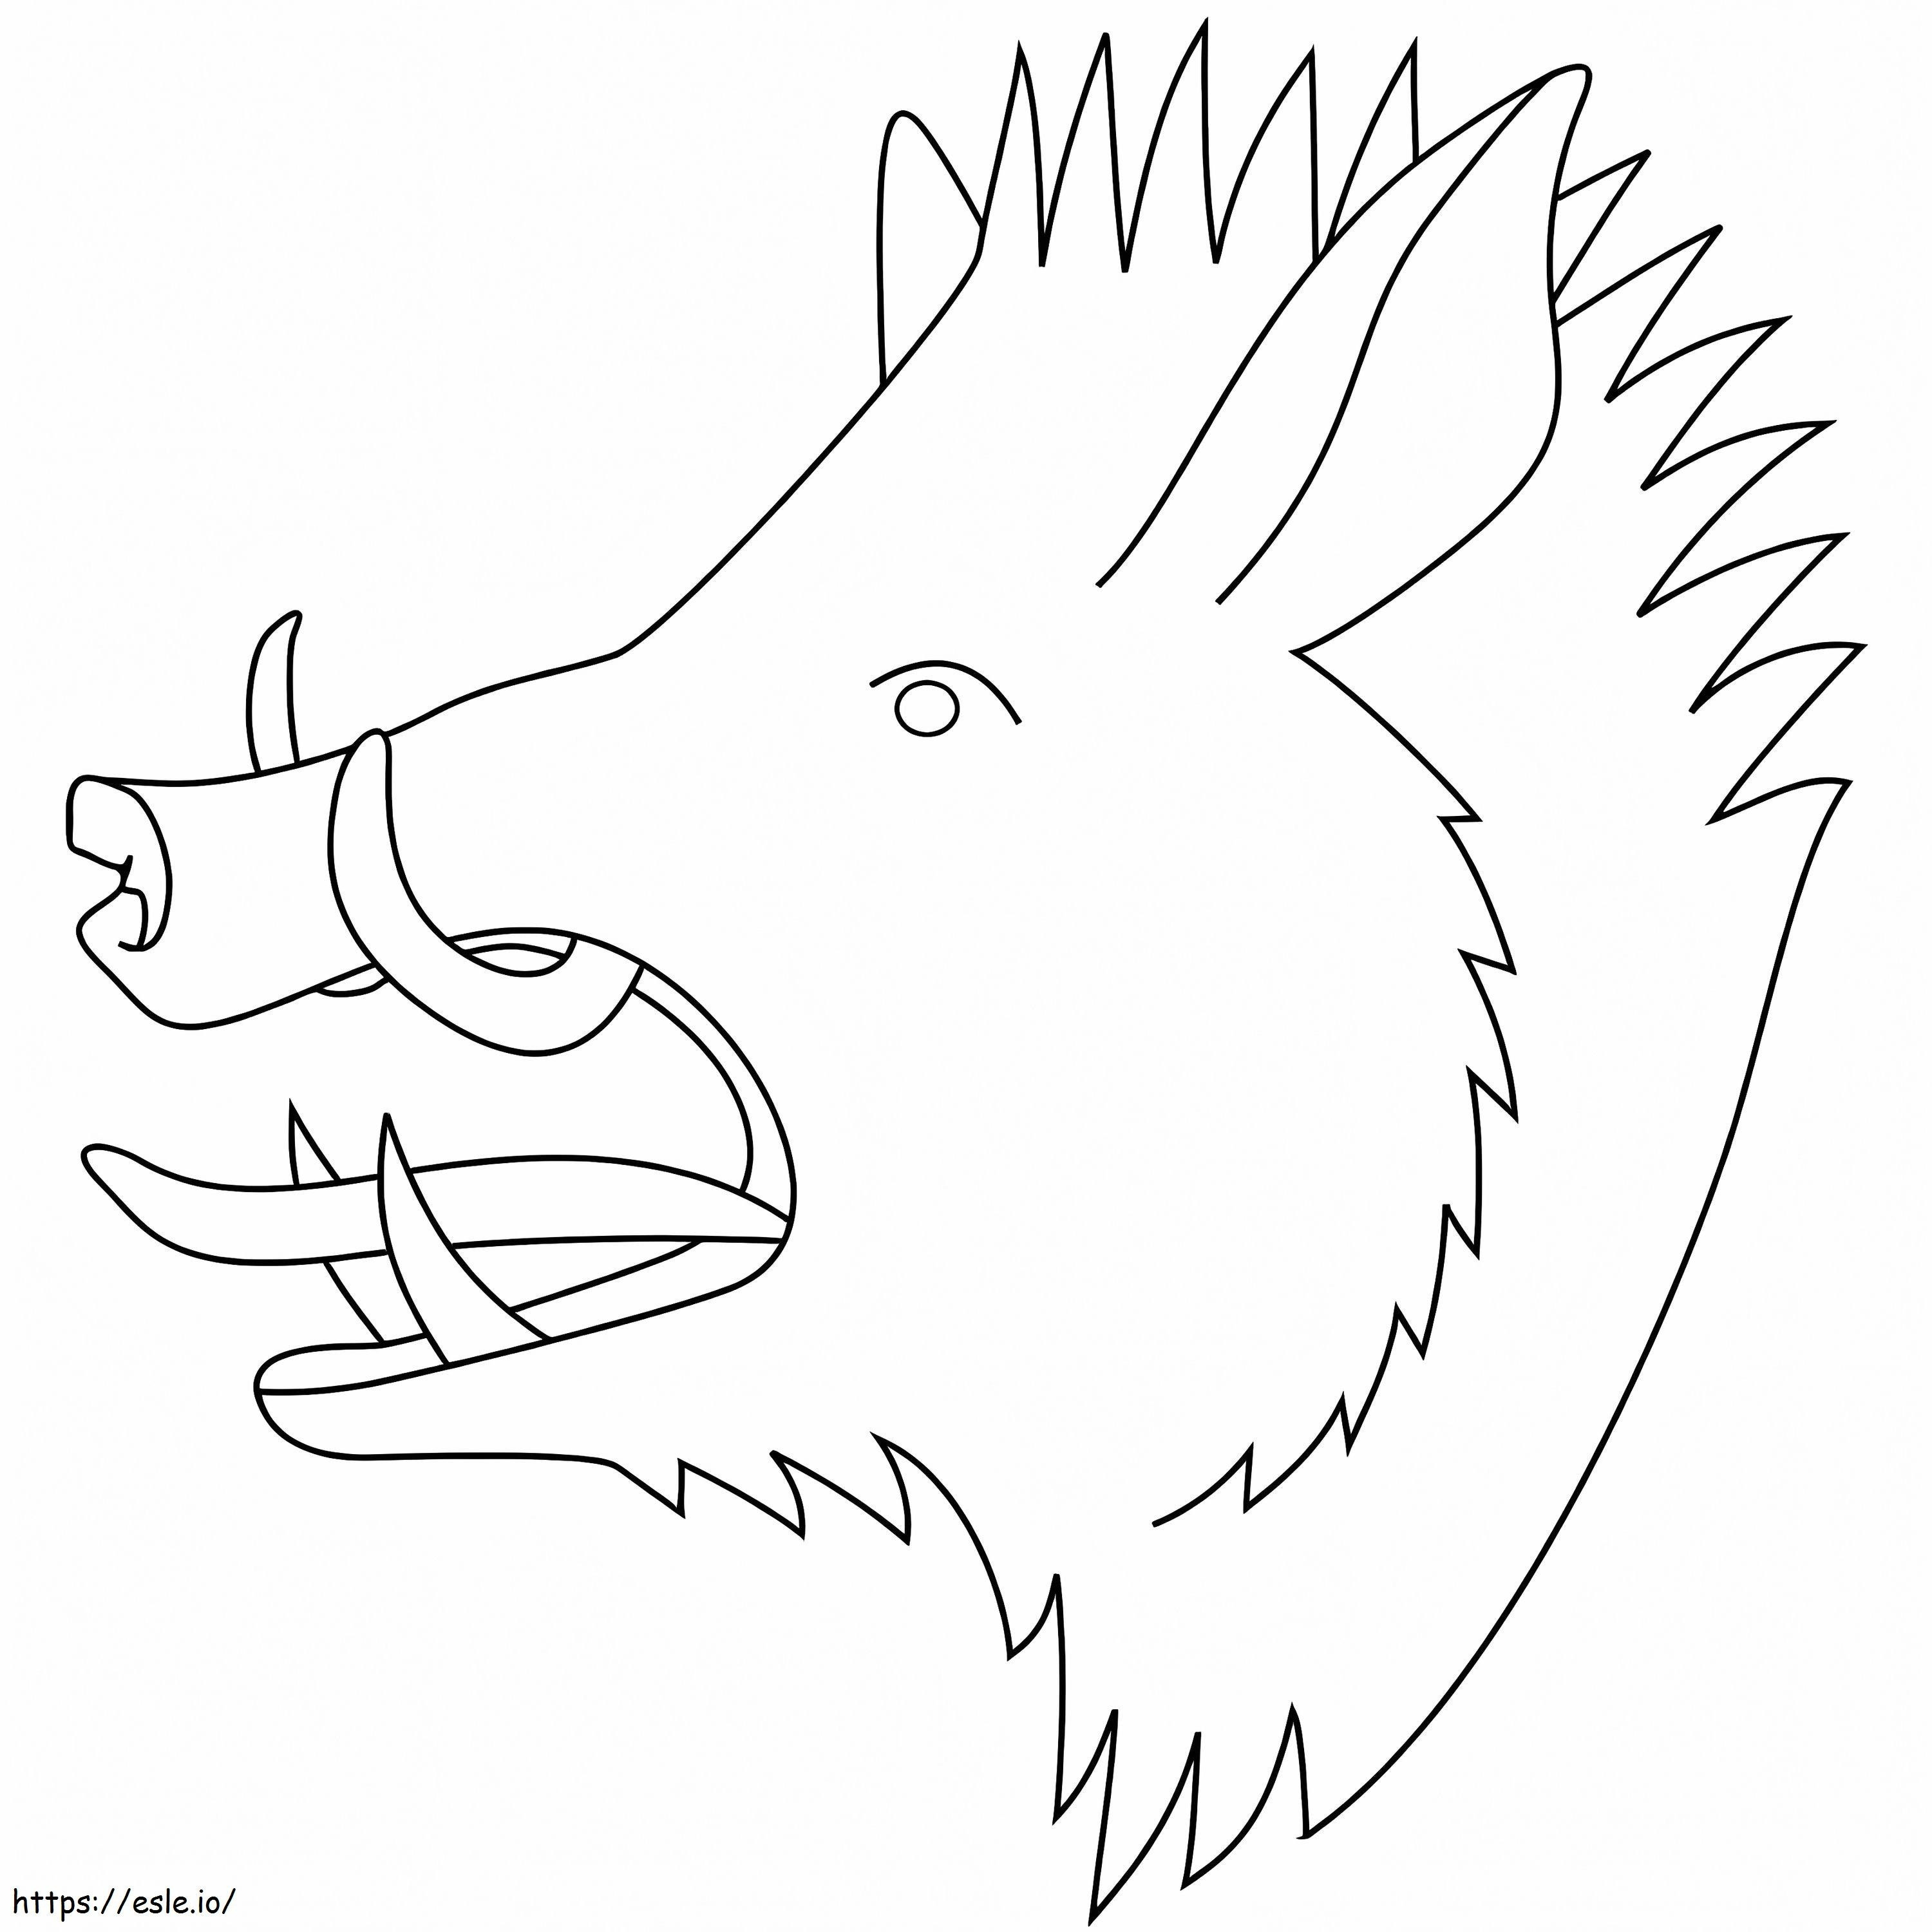 Roaring Boar Head coloring page